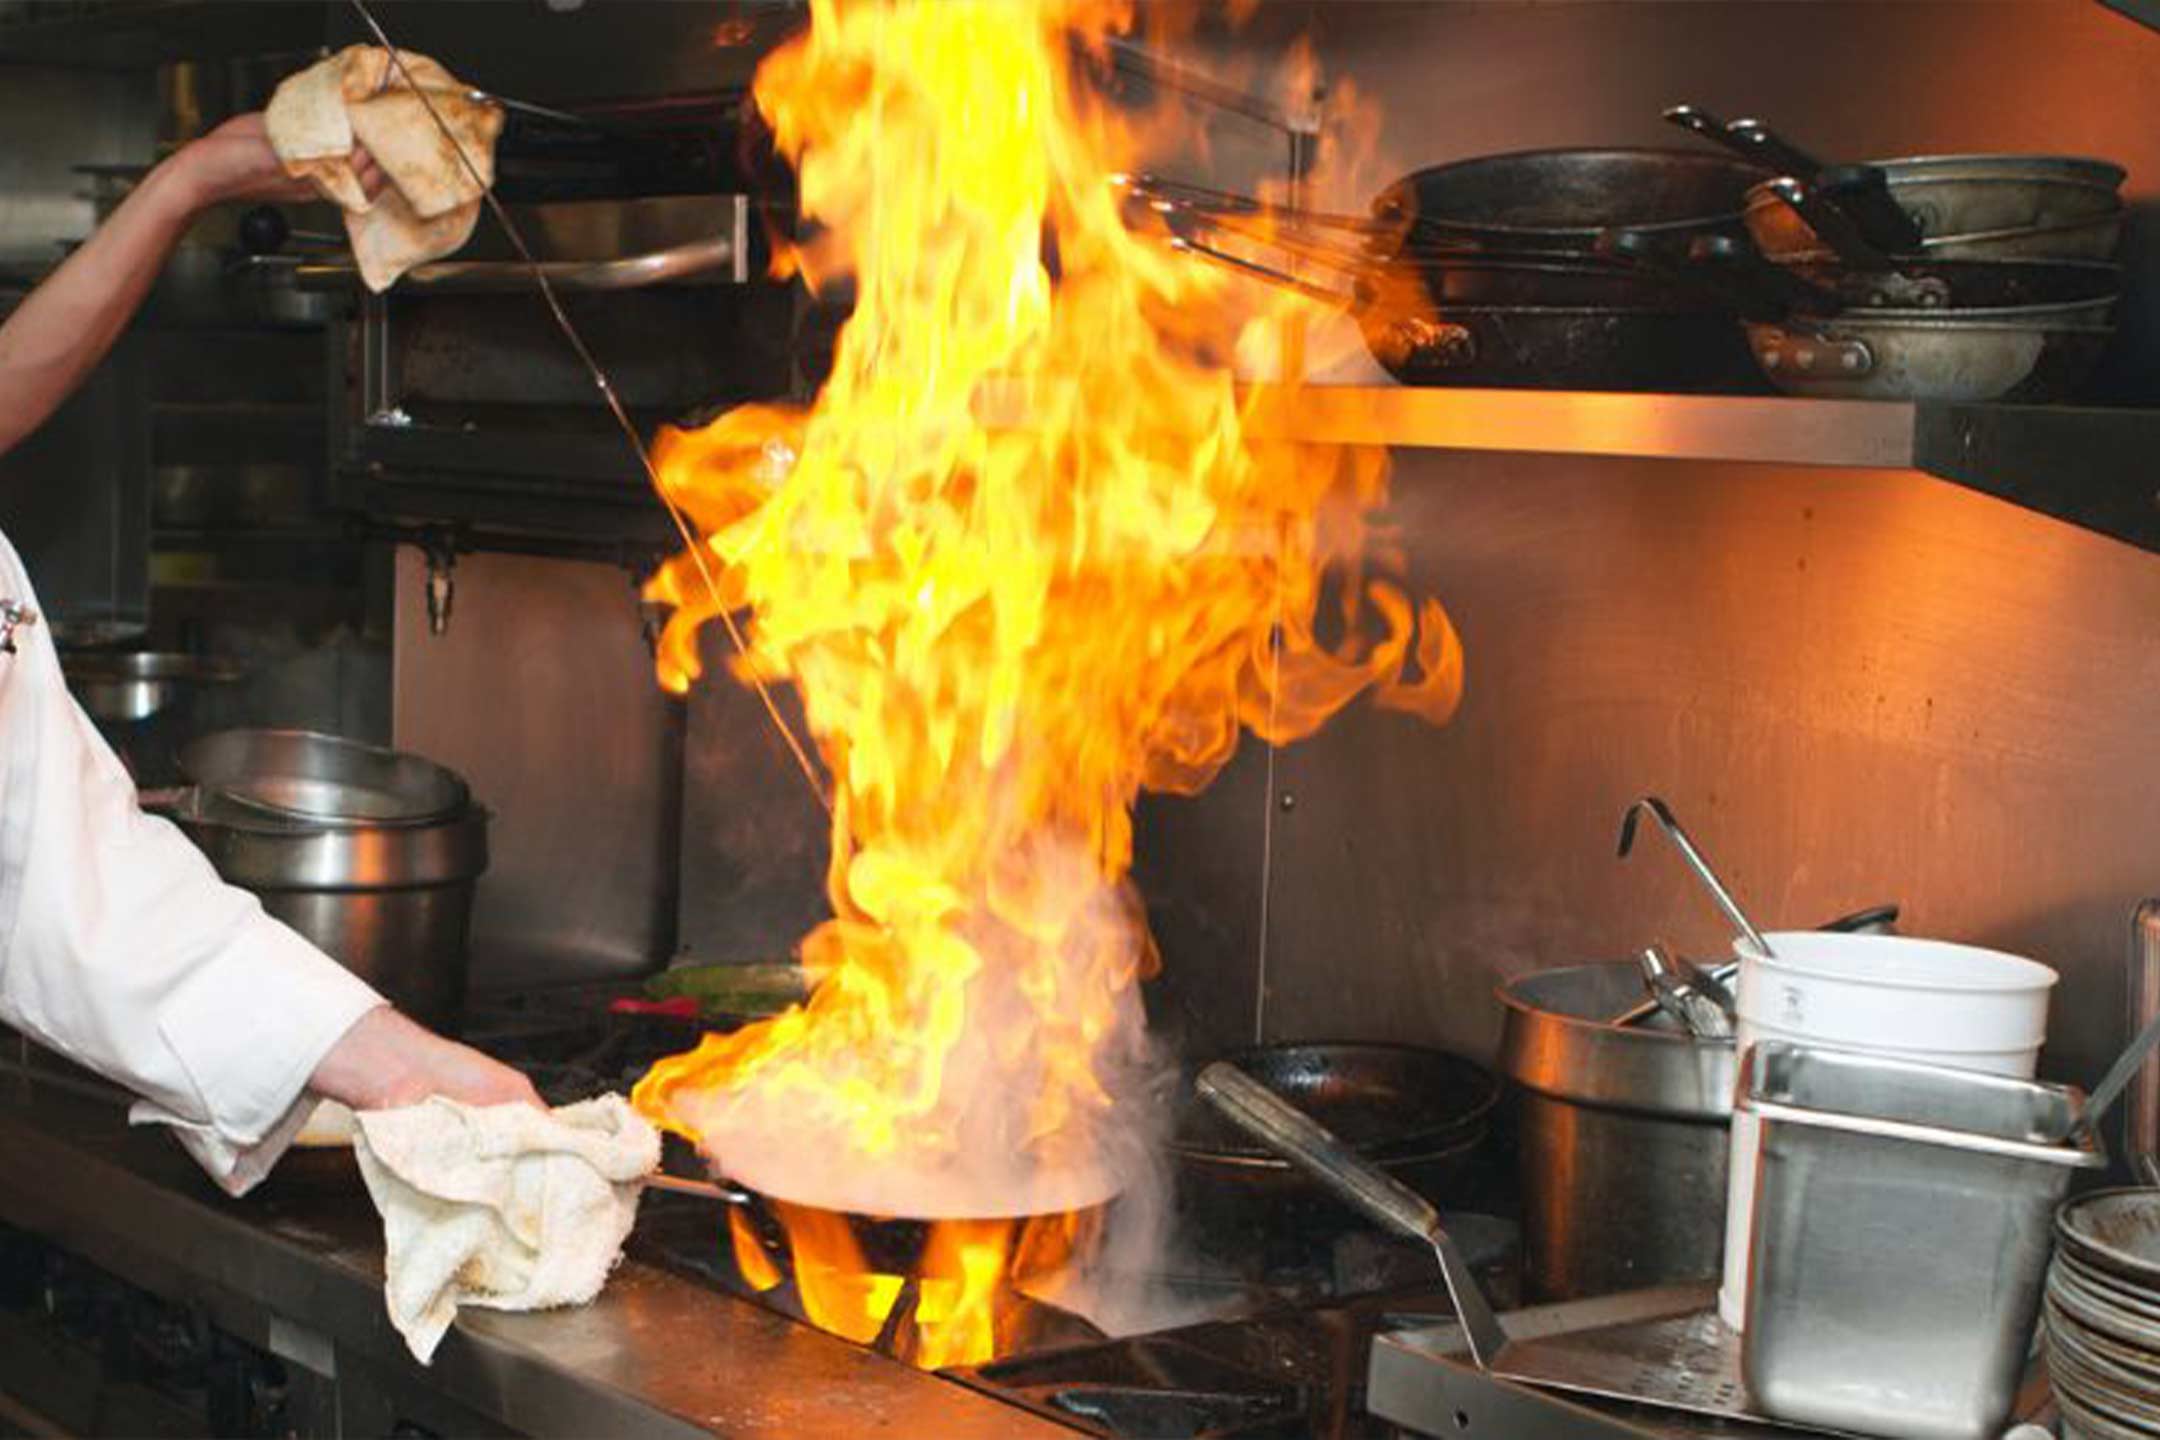 آتش سوزی در آشپزخانه - ماهیتابه